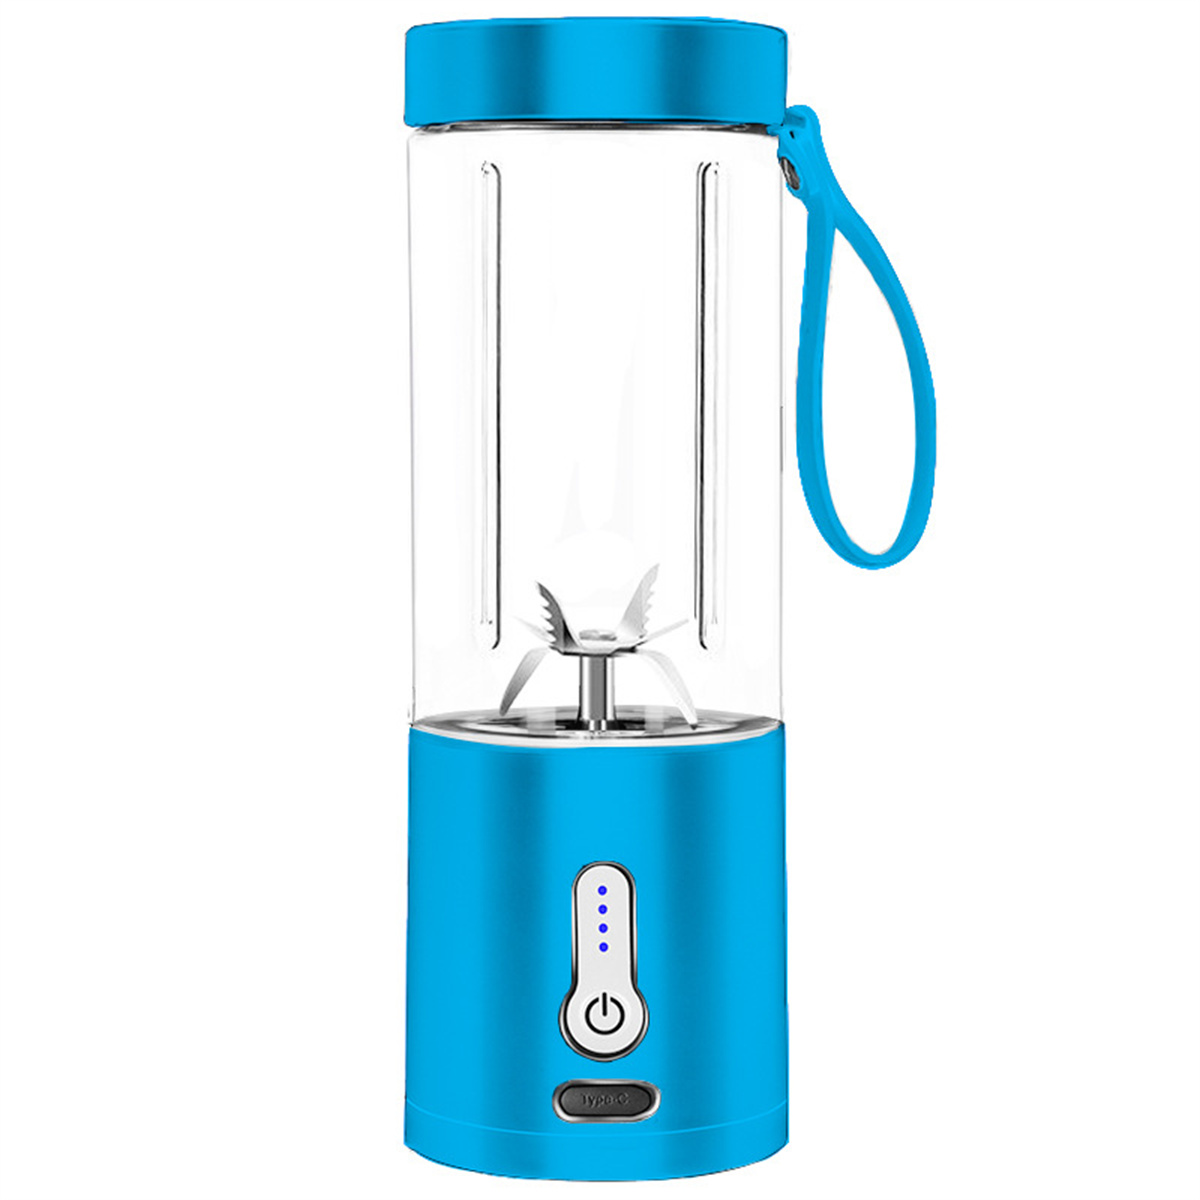 SYNTEK Juice Mug Handkurbel-Entsafter Tragbarer Entsafter, Blue blau Mixer Fruchtkocher elektrischer